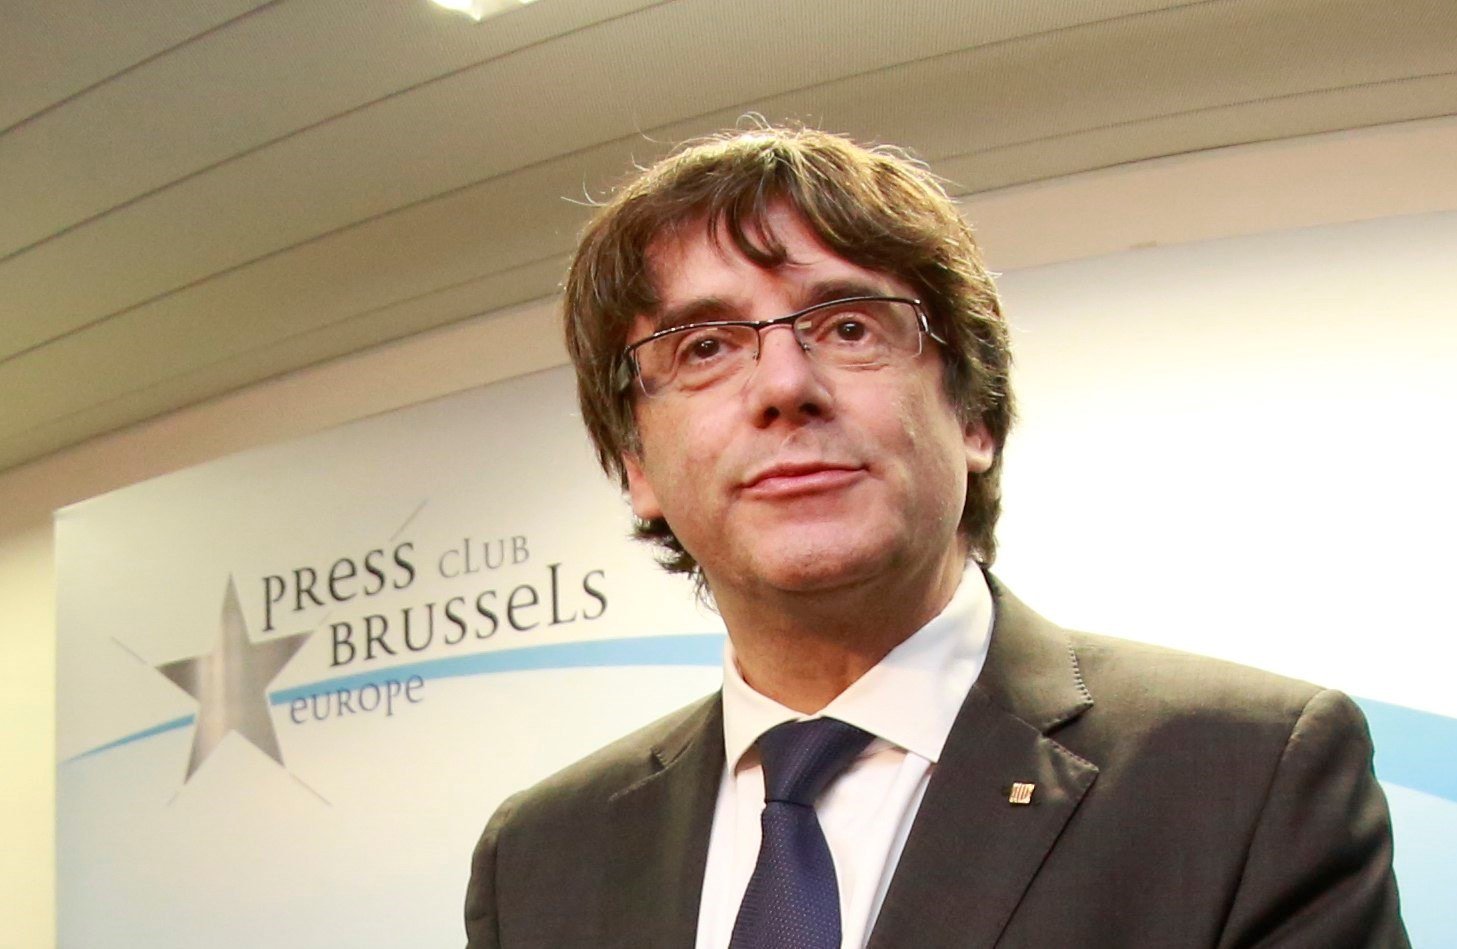 El abogado de Puigdemont en Bruselas asegura que lucharán contra la extradición